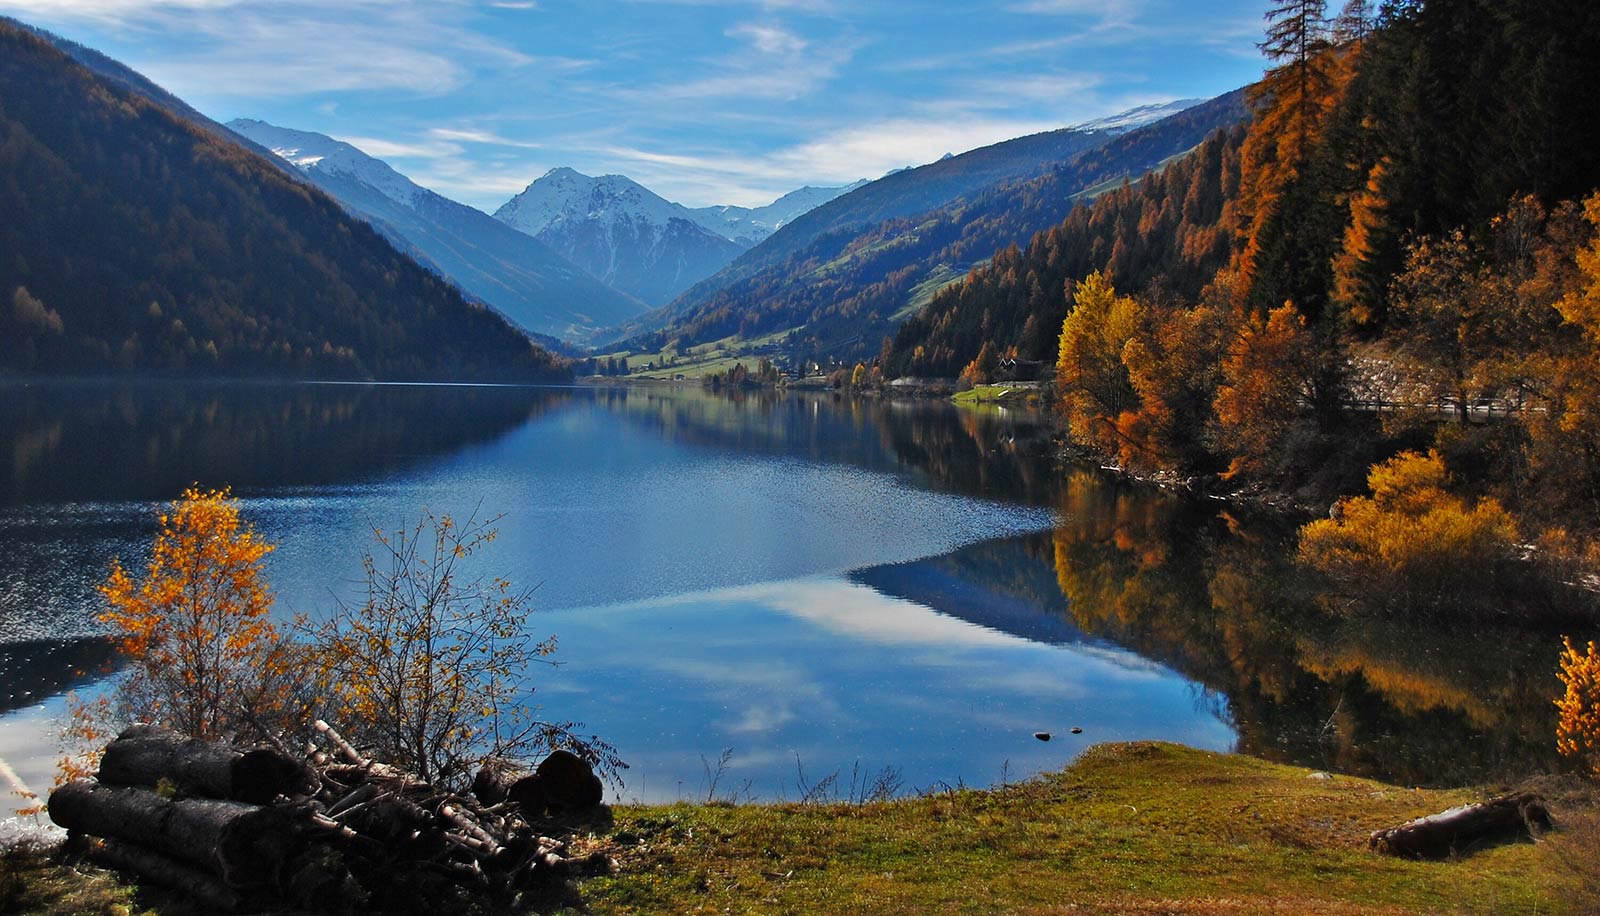 Il Lago di Zoccolo in Val d'Ultimo in autunno con montagne innevate sullo sfondo